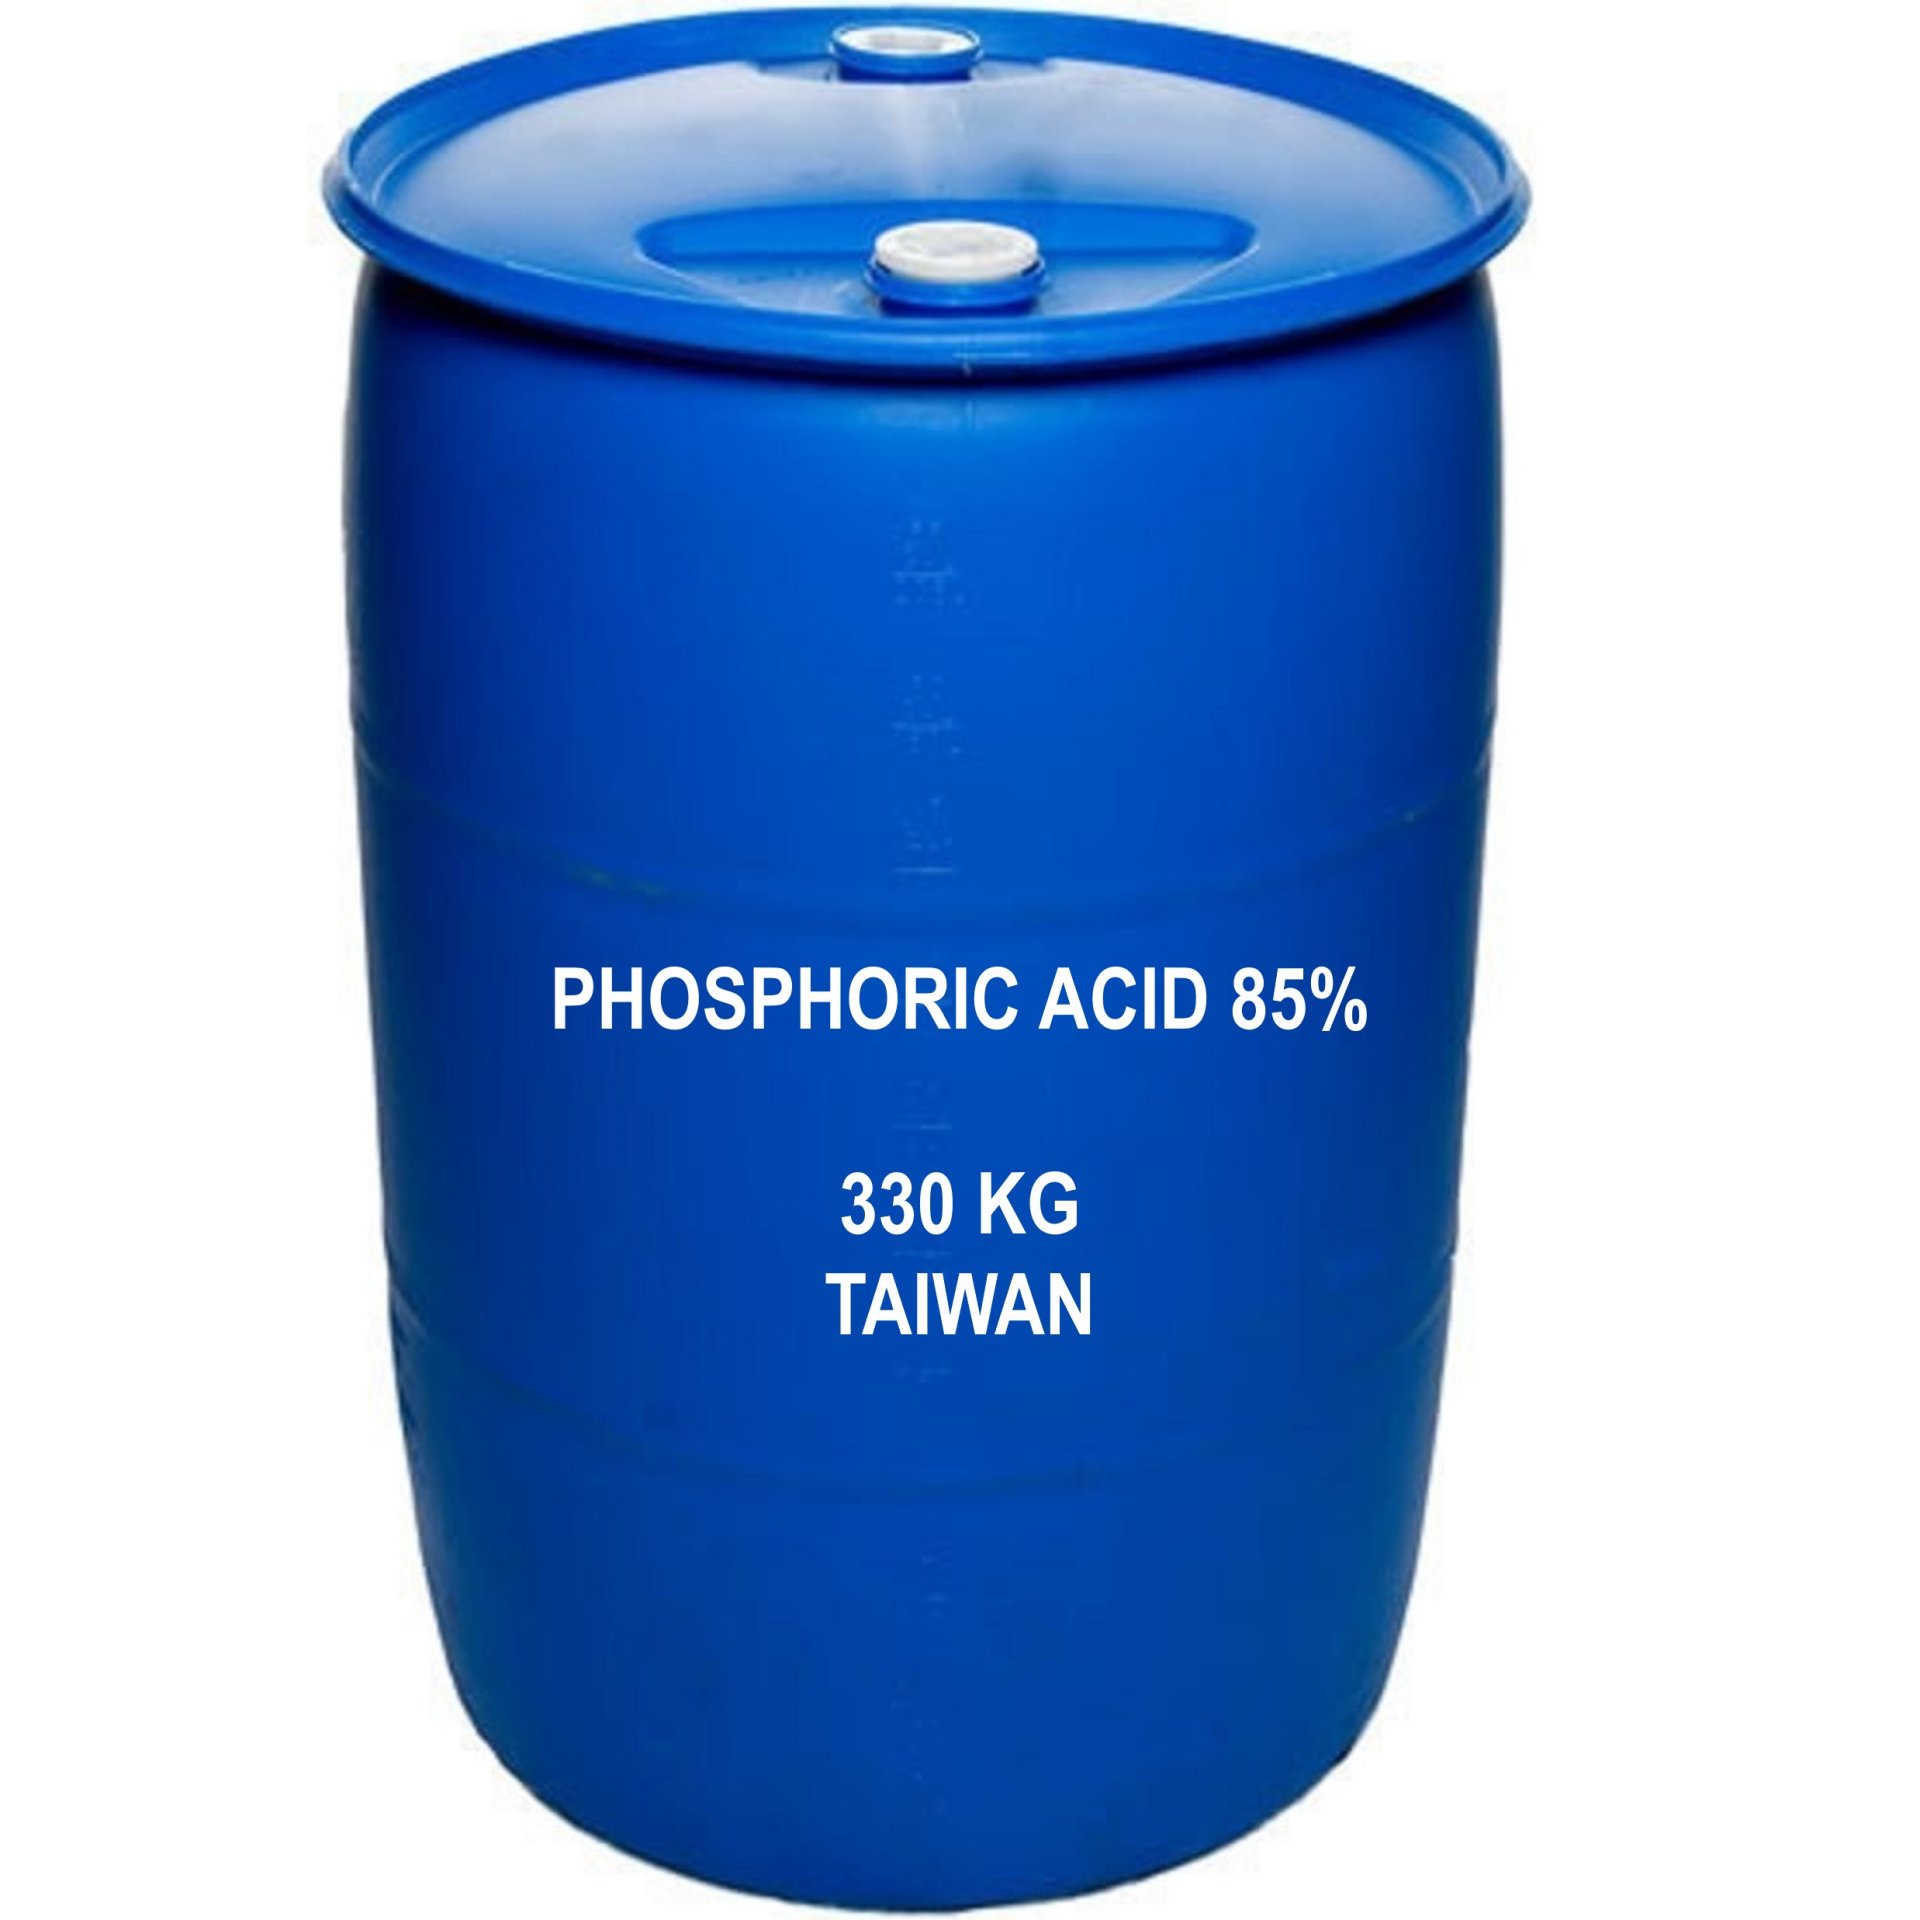 PHOSPHORIC ACID 85%